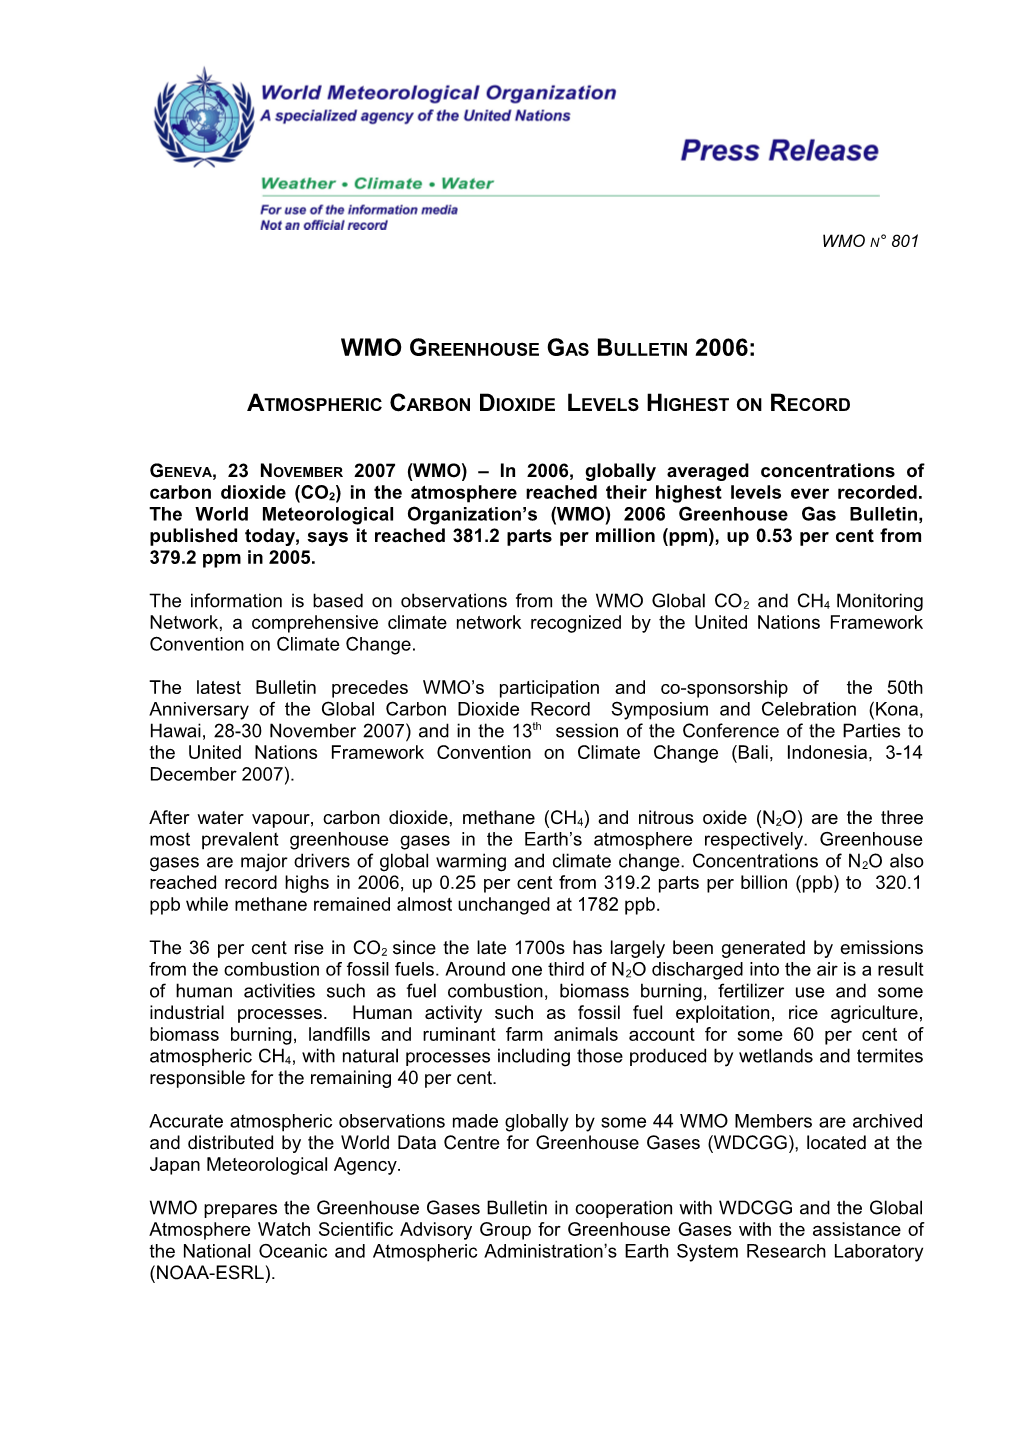 WMO Greenhouse Gas Bulletin 2006